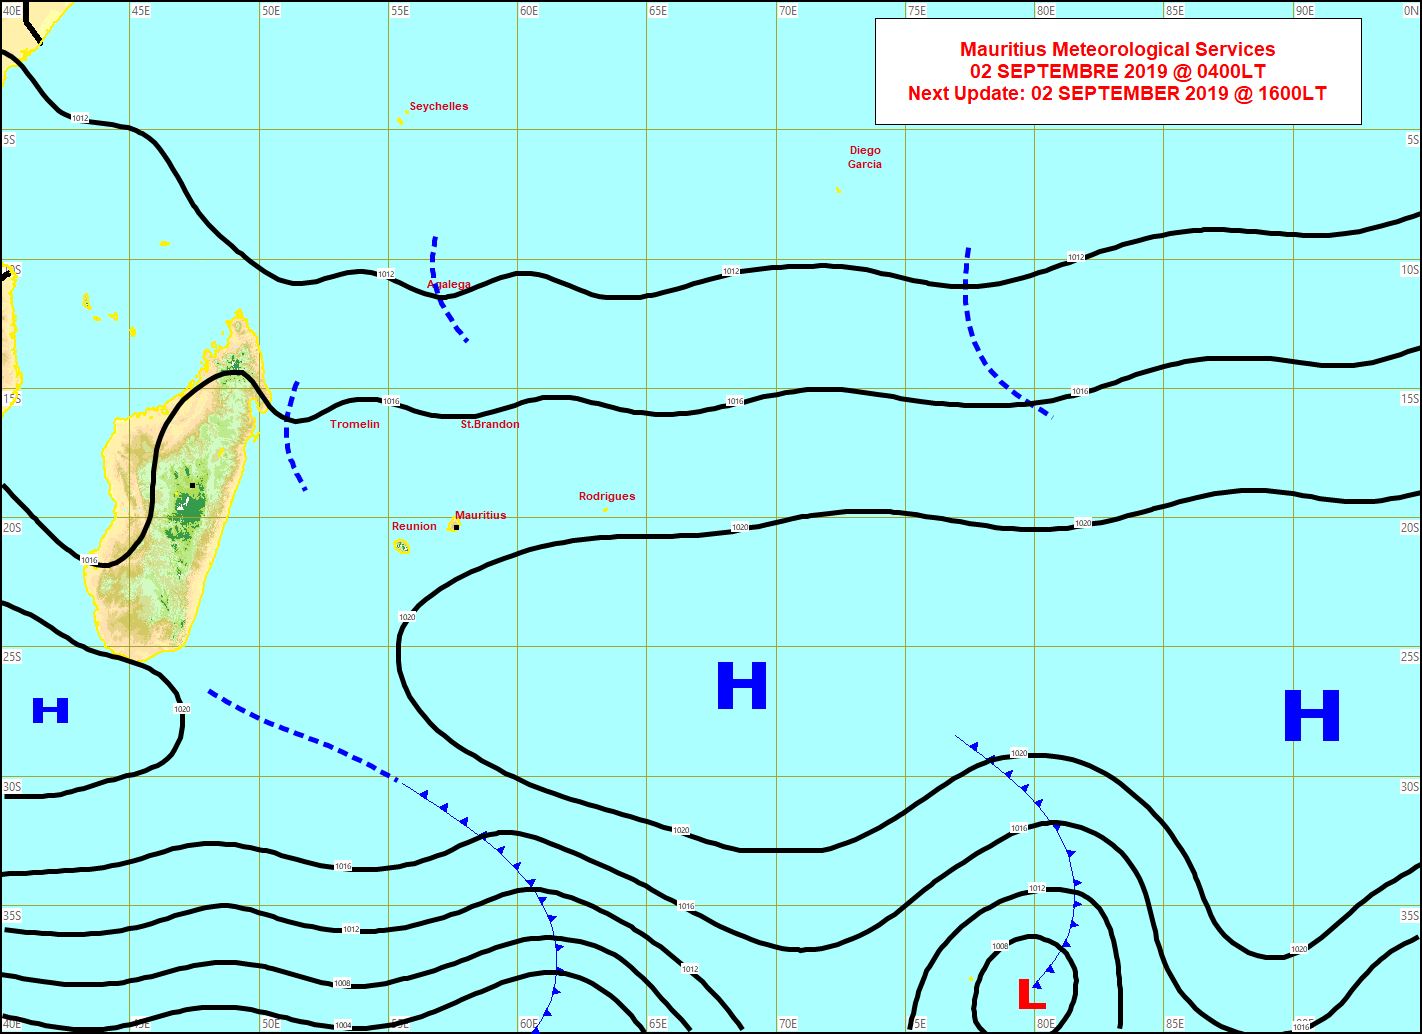 Carte d'analyse de surface. Les vents sont faibles sur les Iles Soeurs. MMS